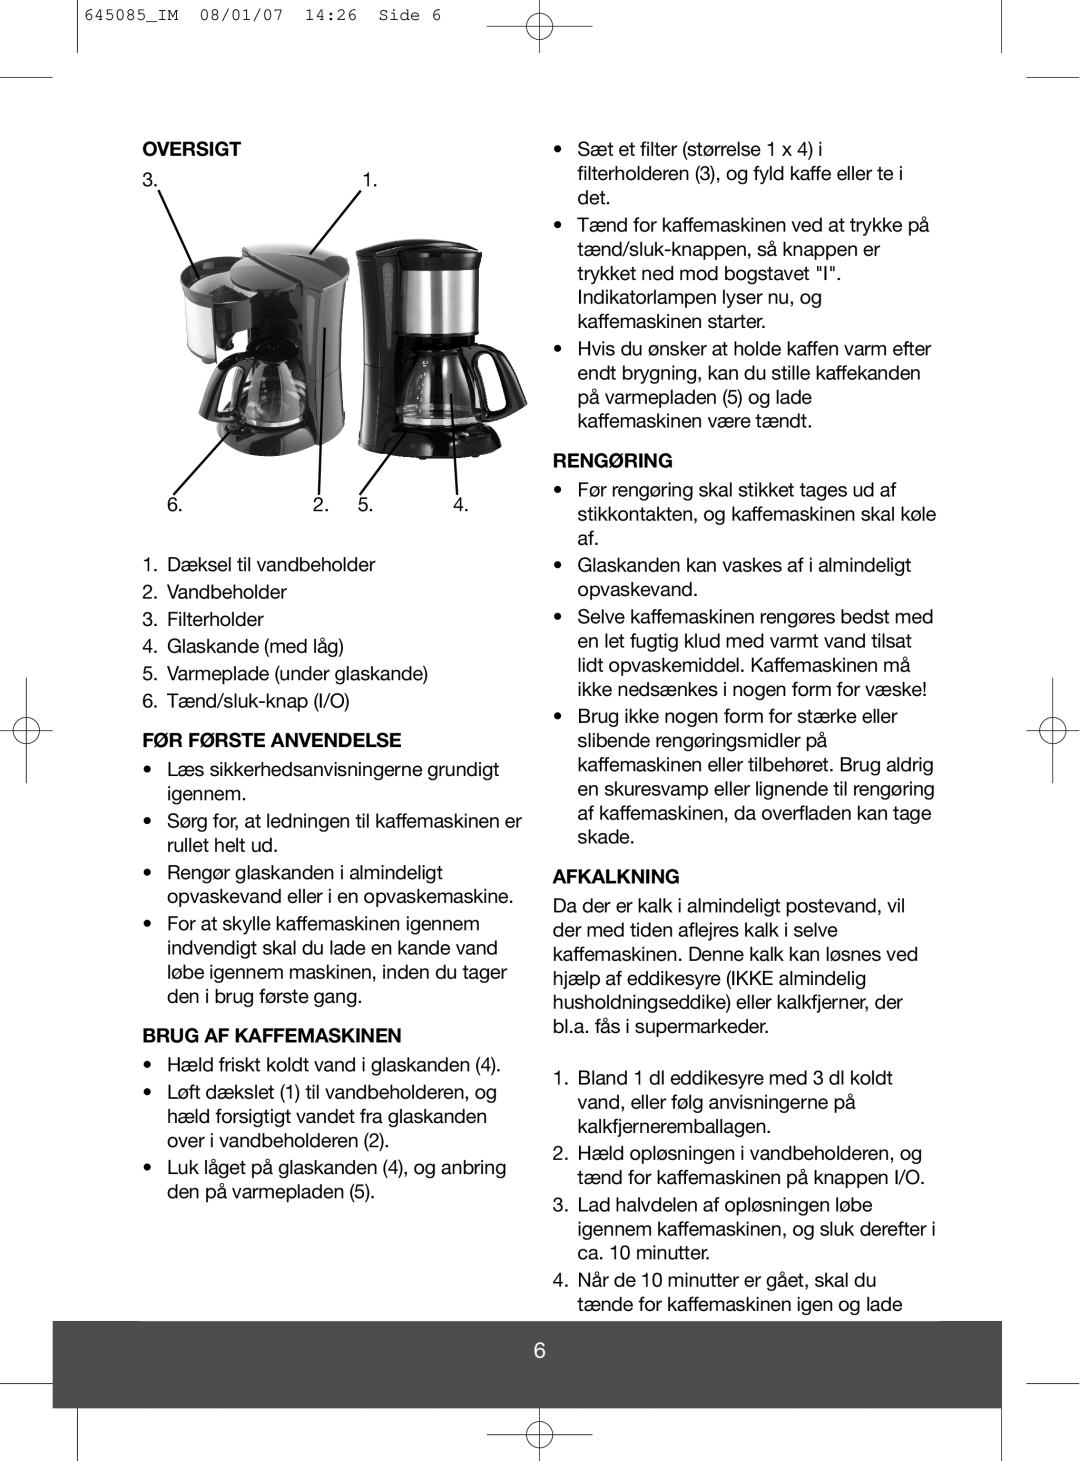 Butler 645-260 manual Oversigt, Før Første Anvendelse, Brug Af Kaffemaskinen, Rengøring, Afkalkning 